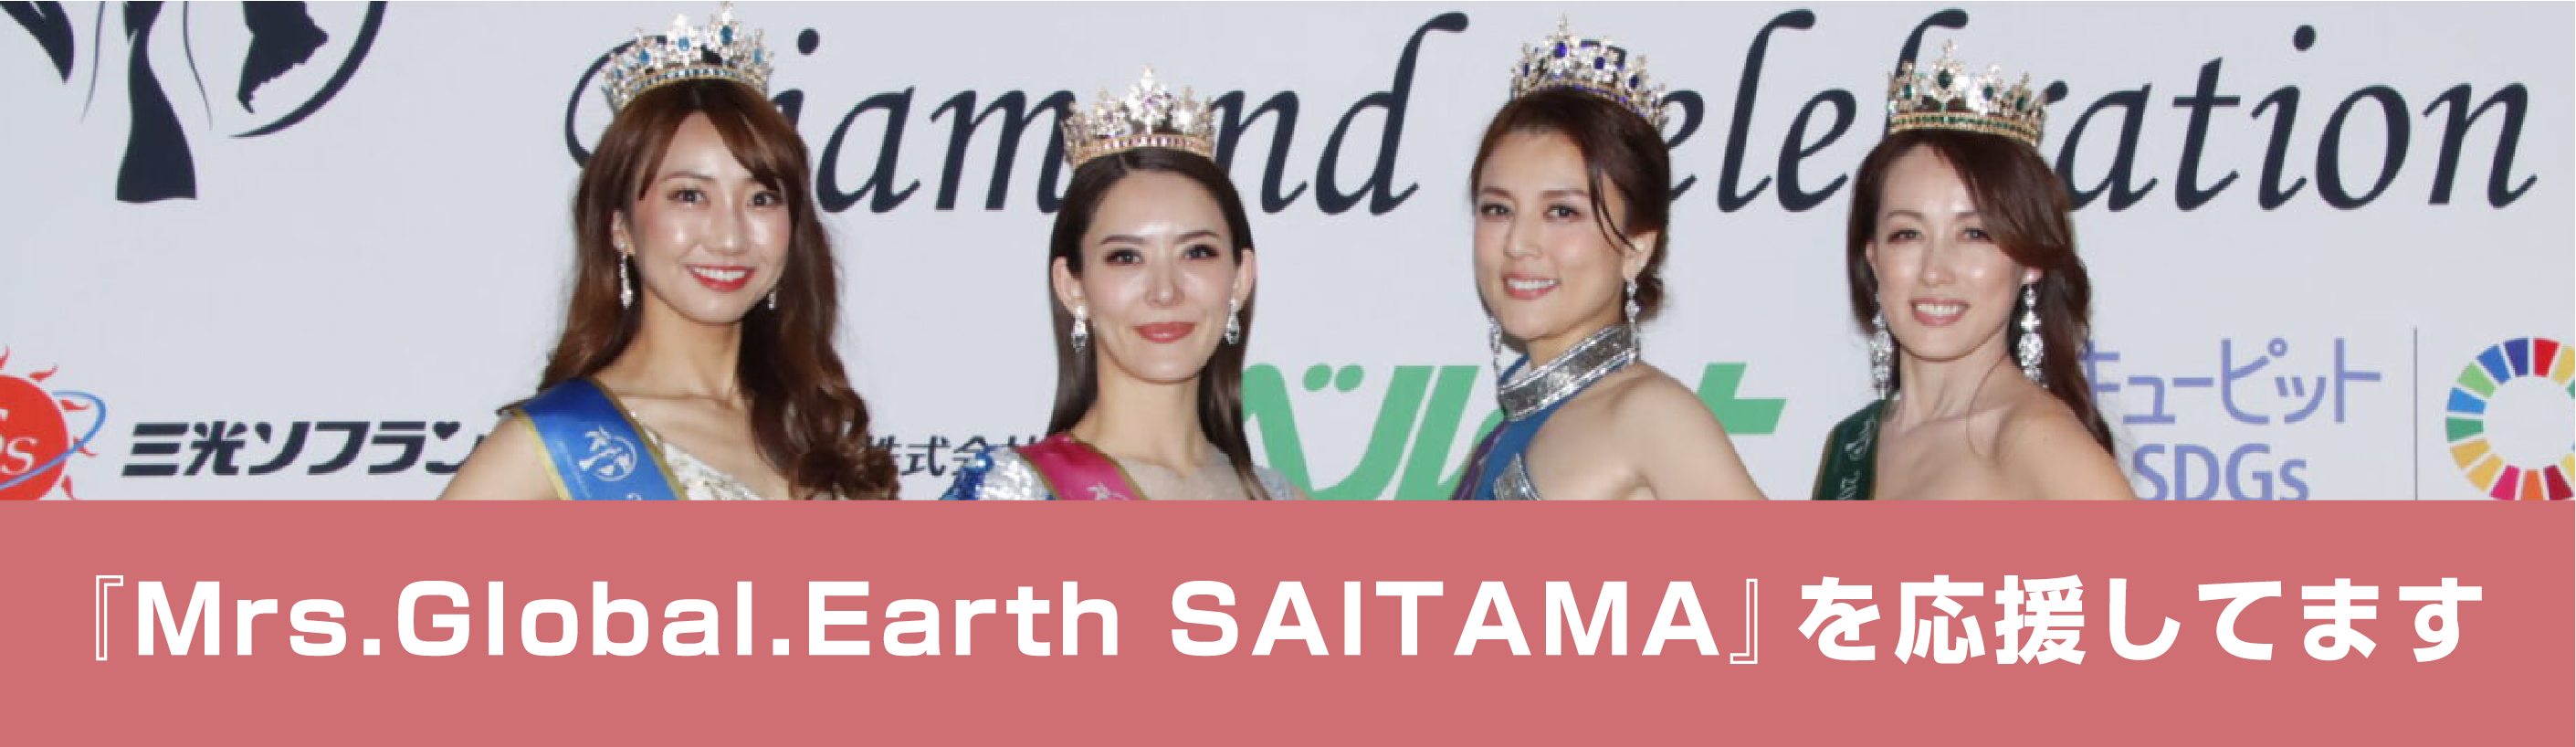 『Mrs.Global.Earth SAITAMA』を応援してます